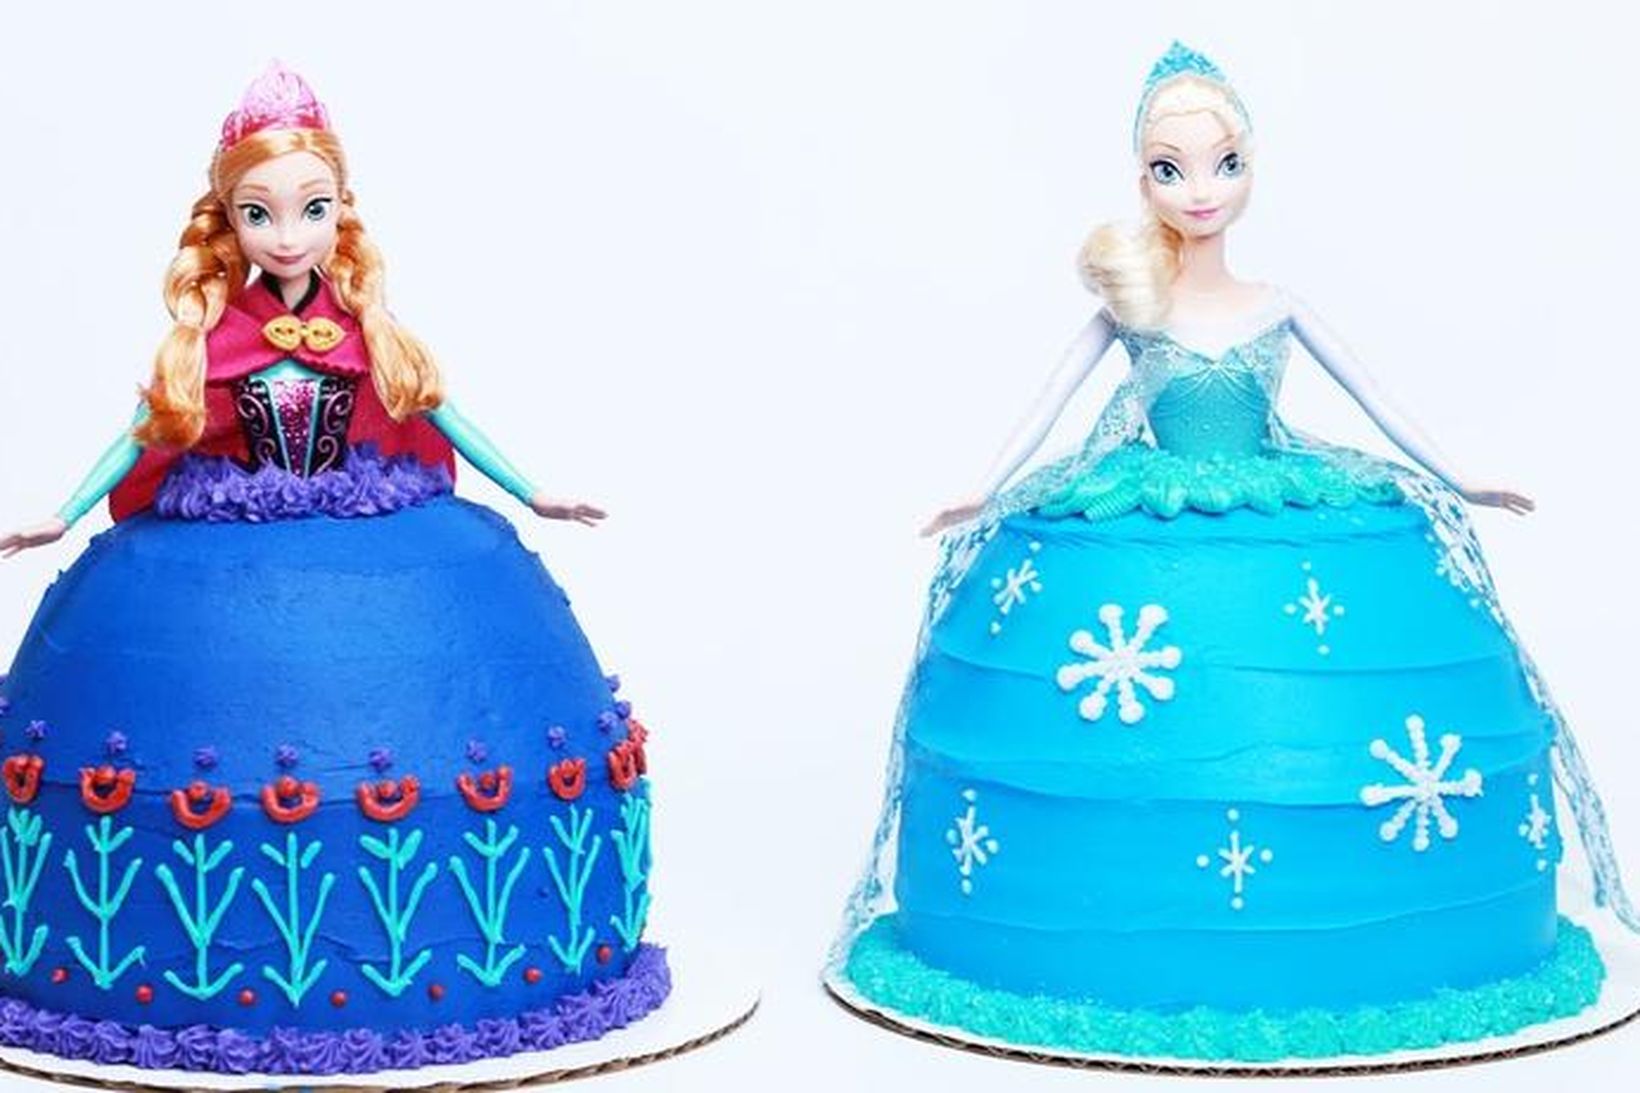 Anna og Elsa úr myndinni Frozen taka sig vel út …